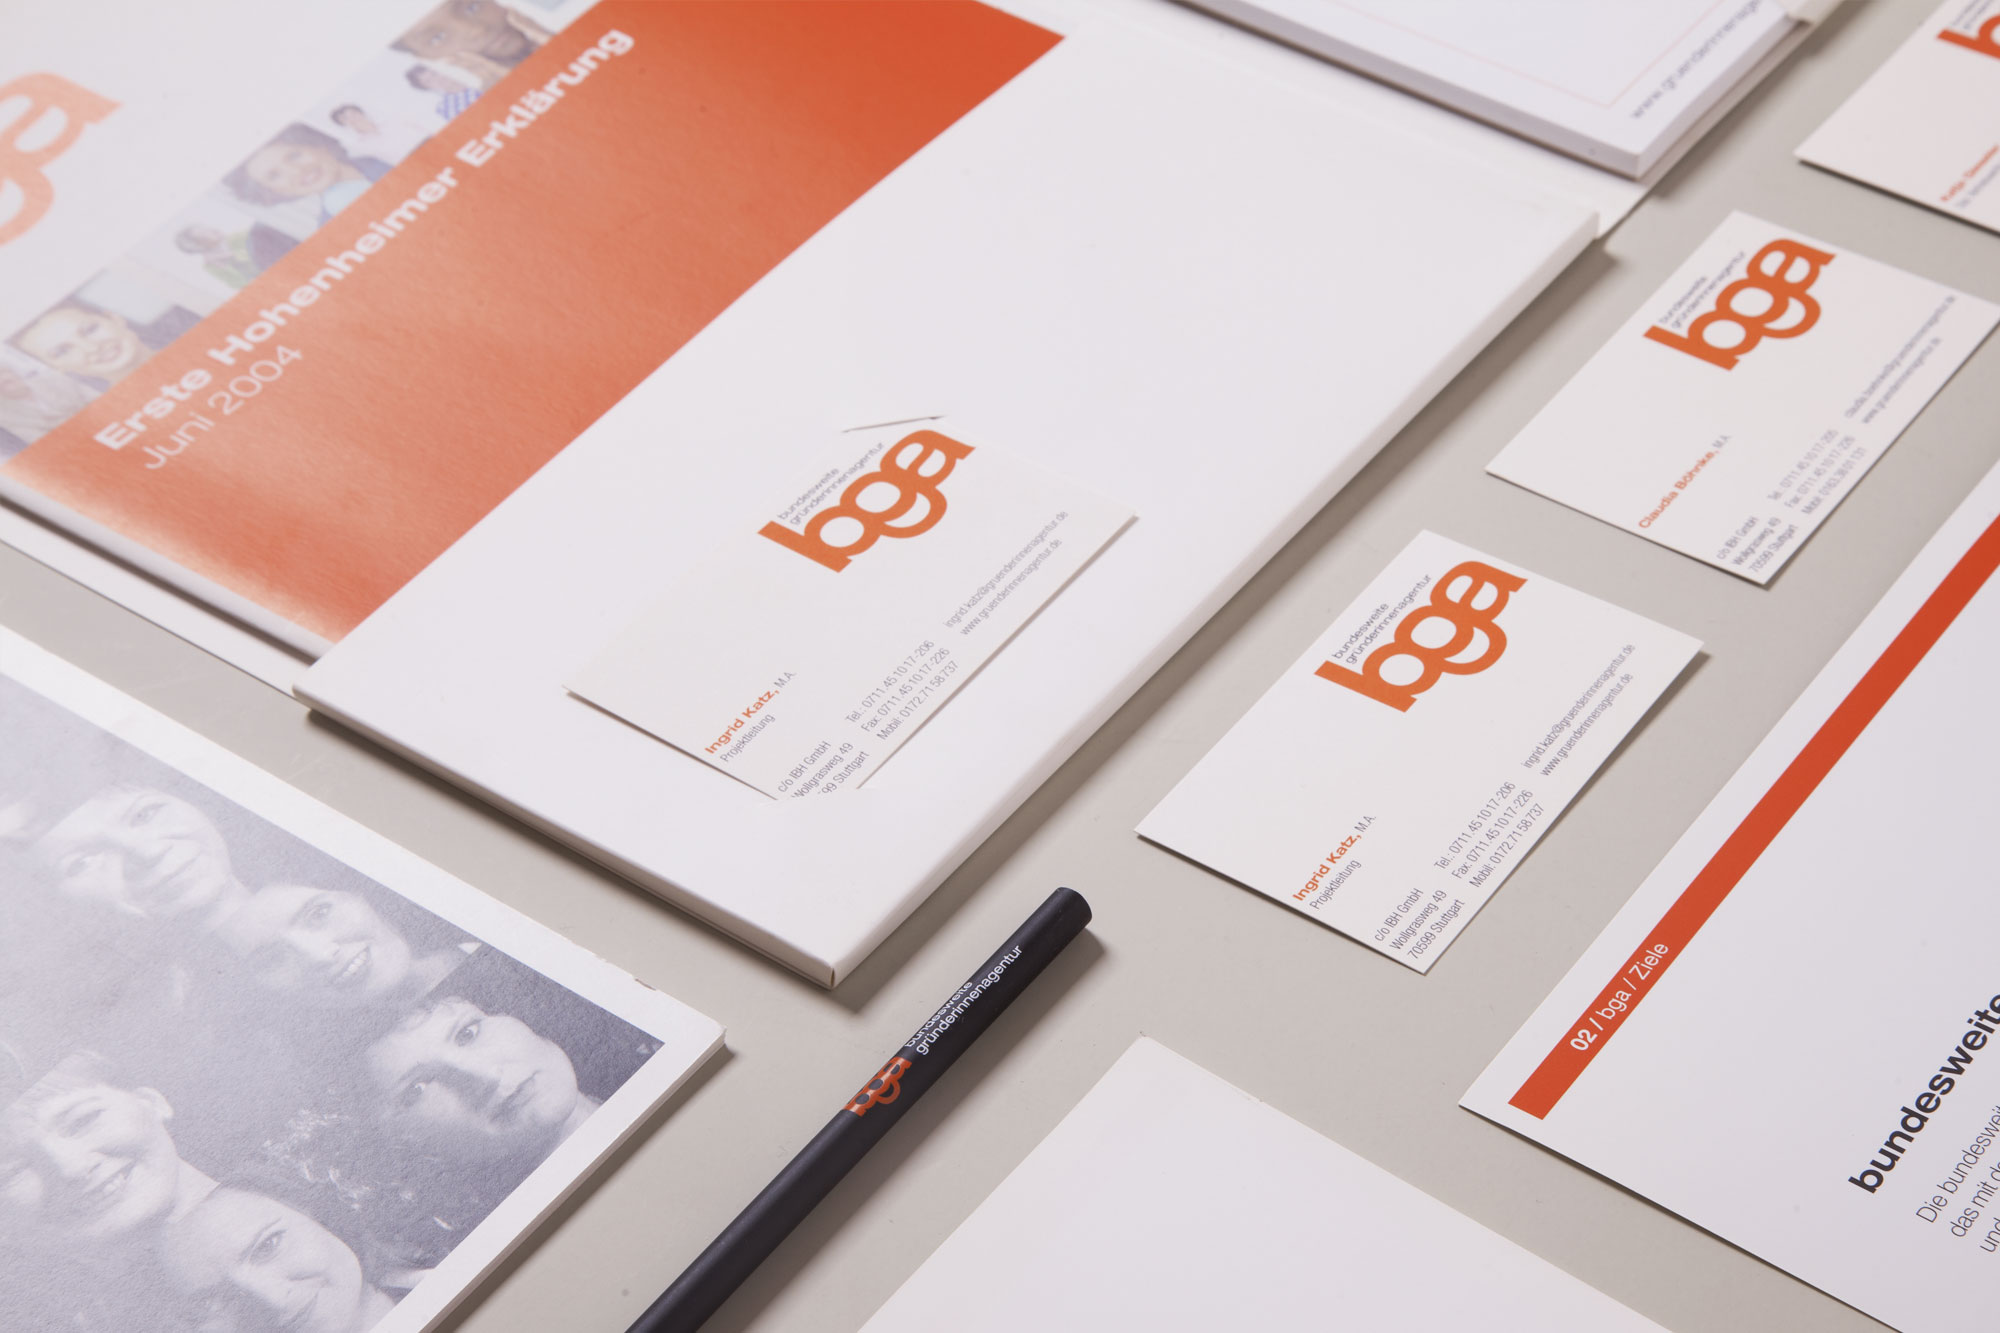 75a entwickelt das Corporate Design der Bundesweiten Gründerinnenagentur